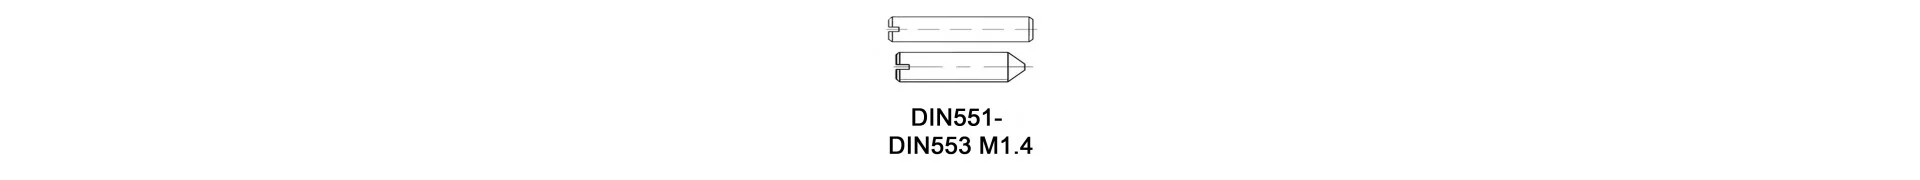 DIN551 - DIN553 M1.4